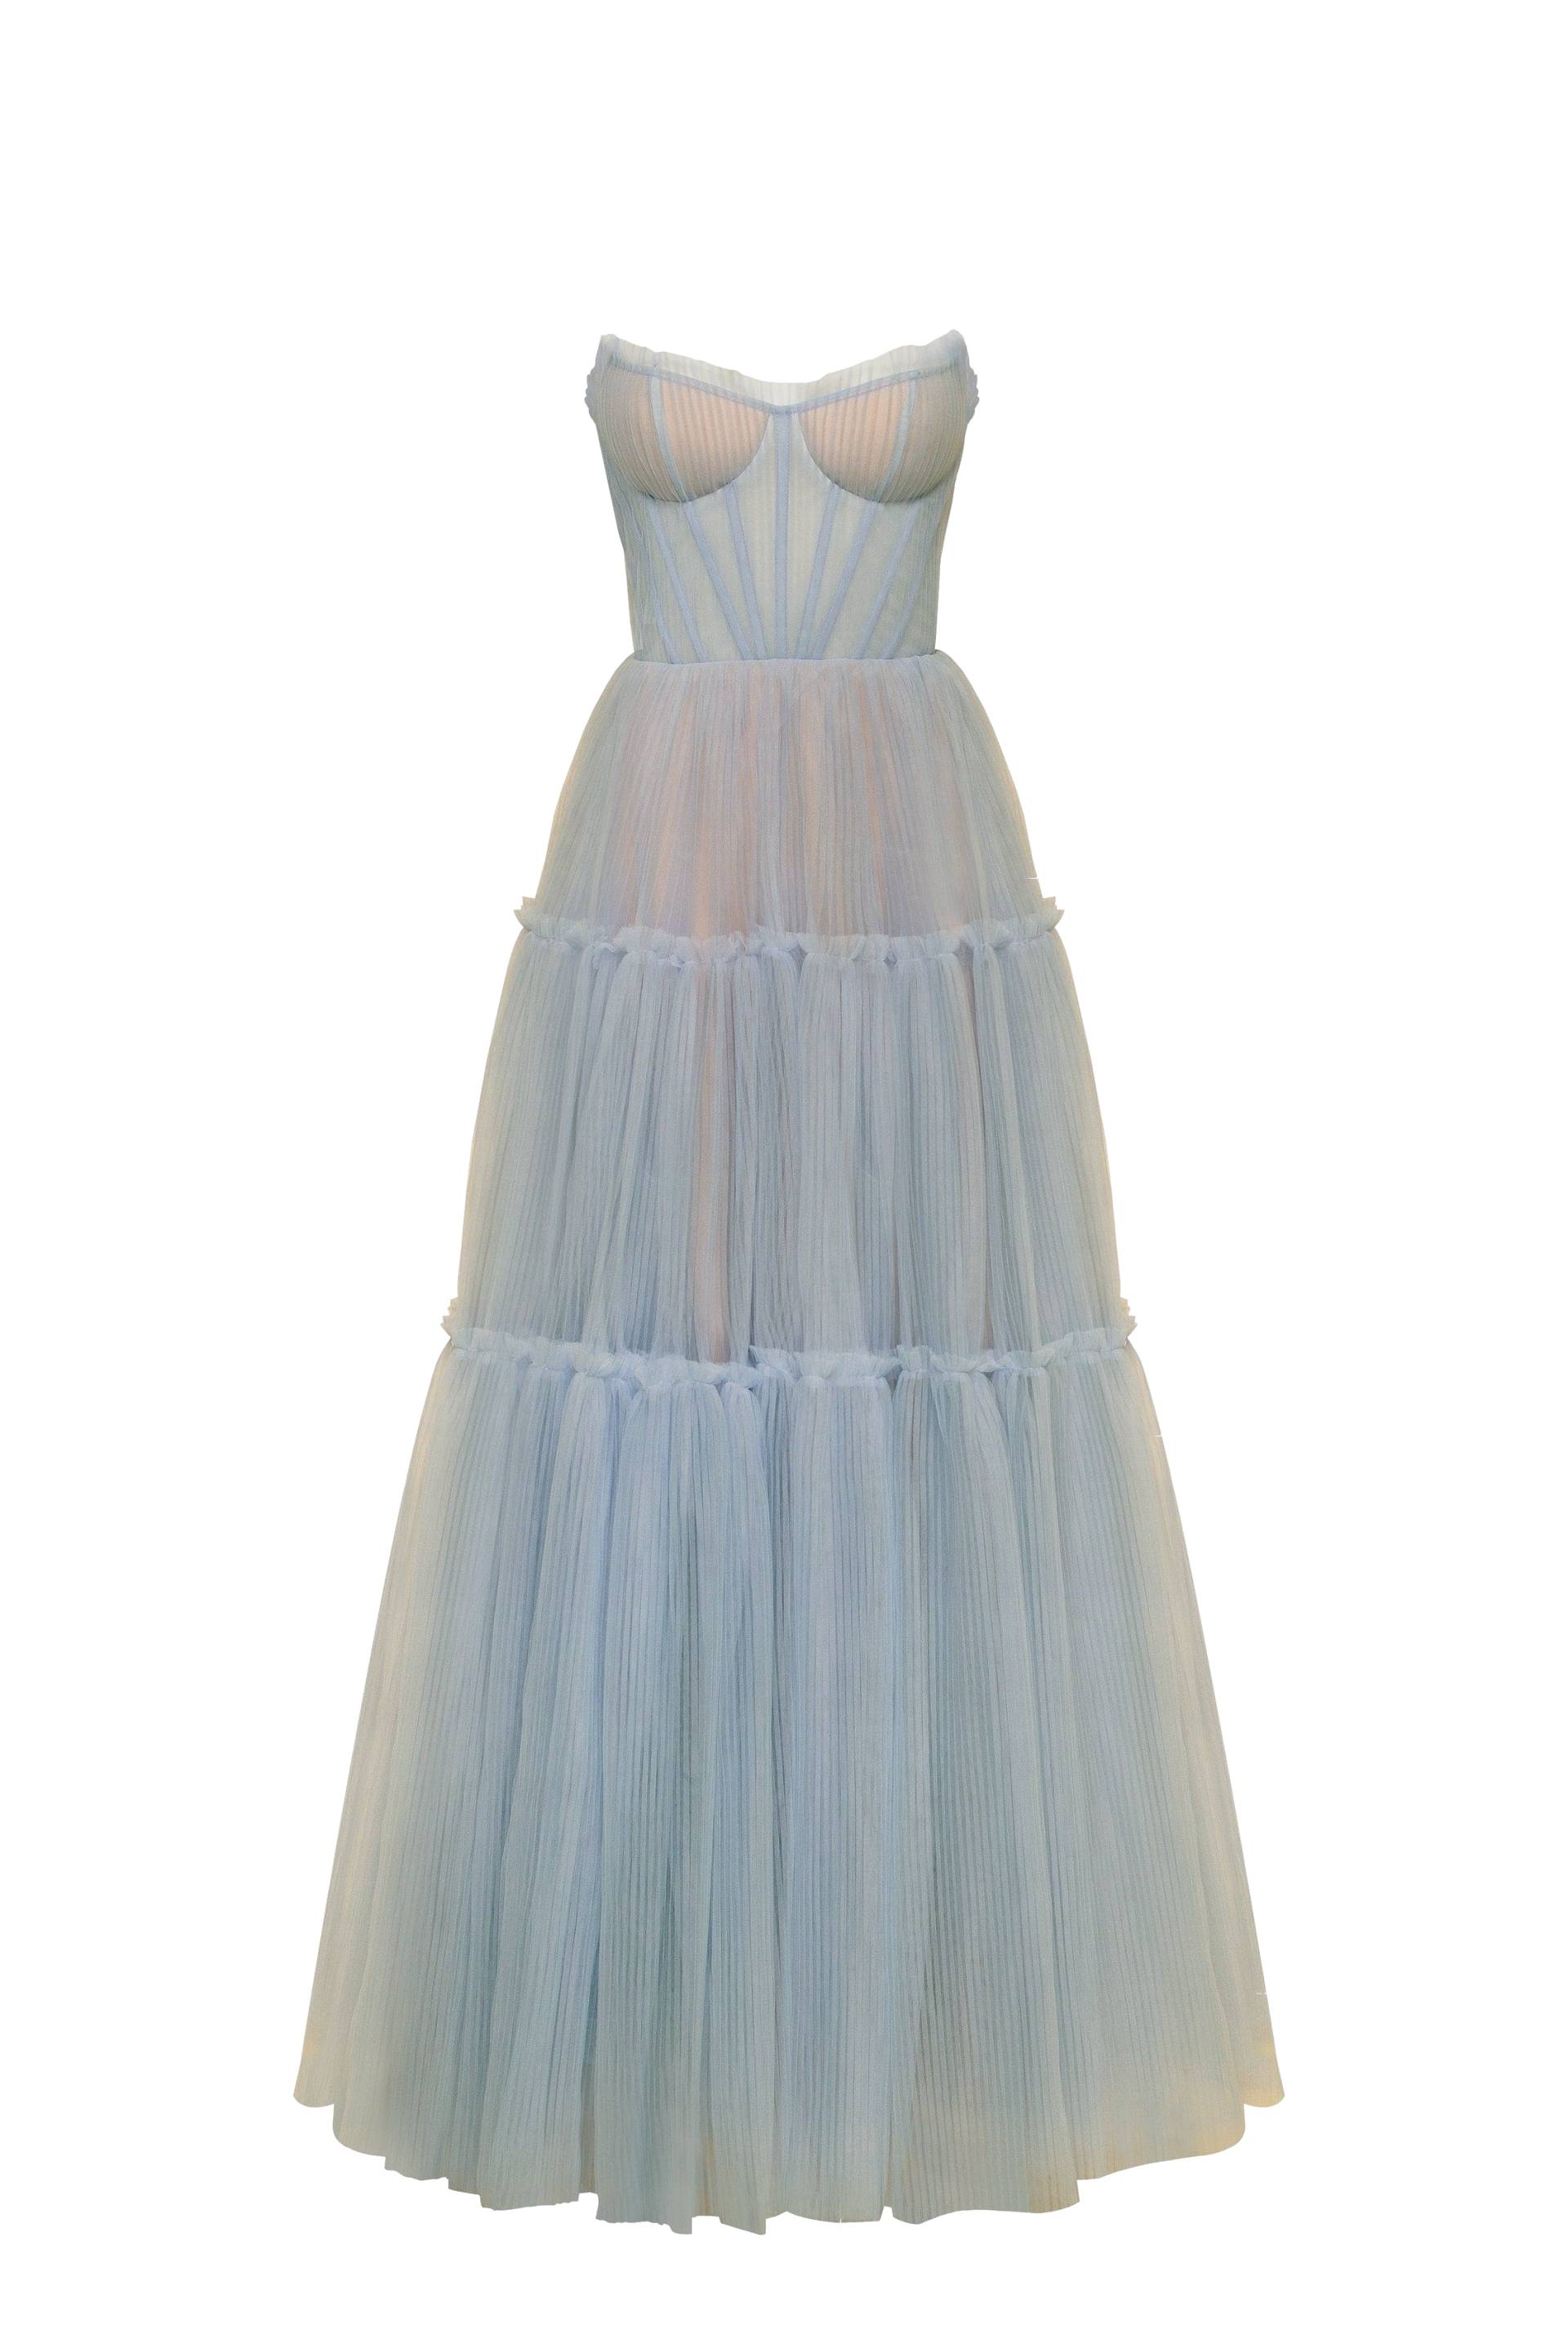 Ocean wave tulle maxi dress with ruffled skirt, Garden of Eden von Milla